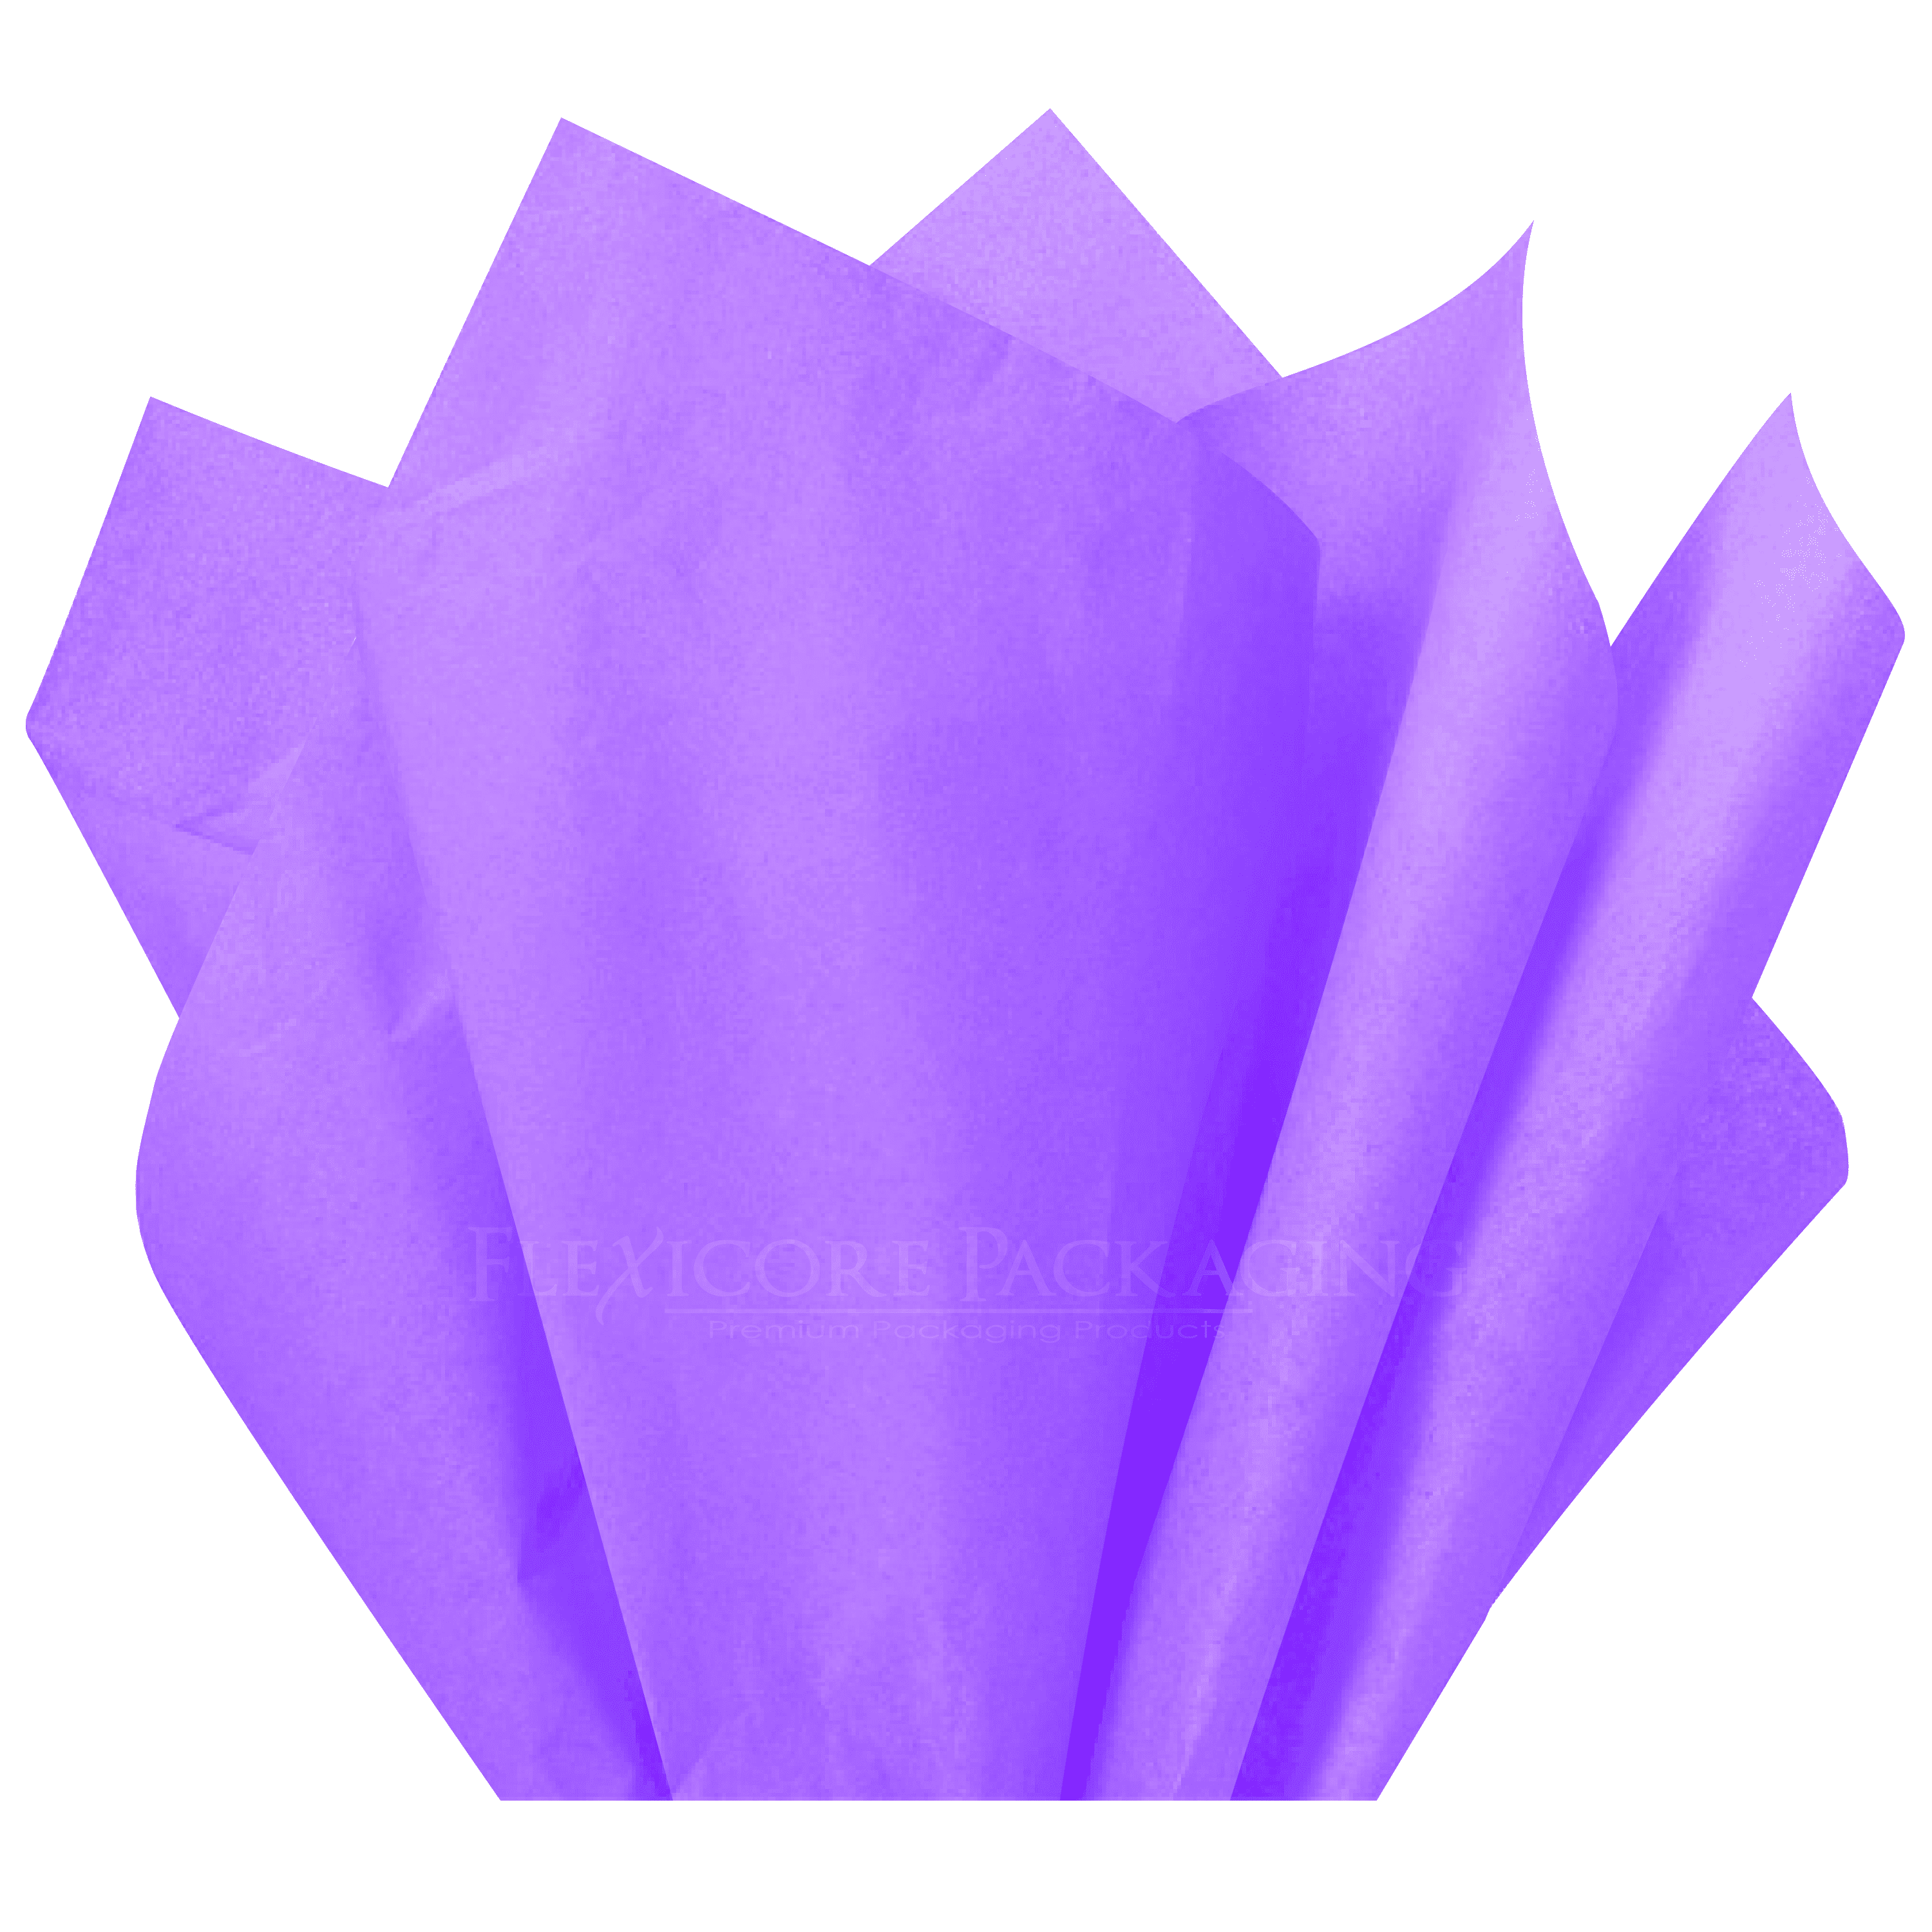 Hallmark Tissue Paper, Lavender